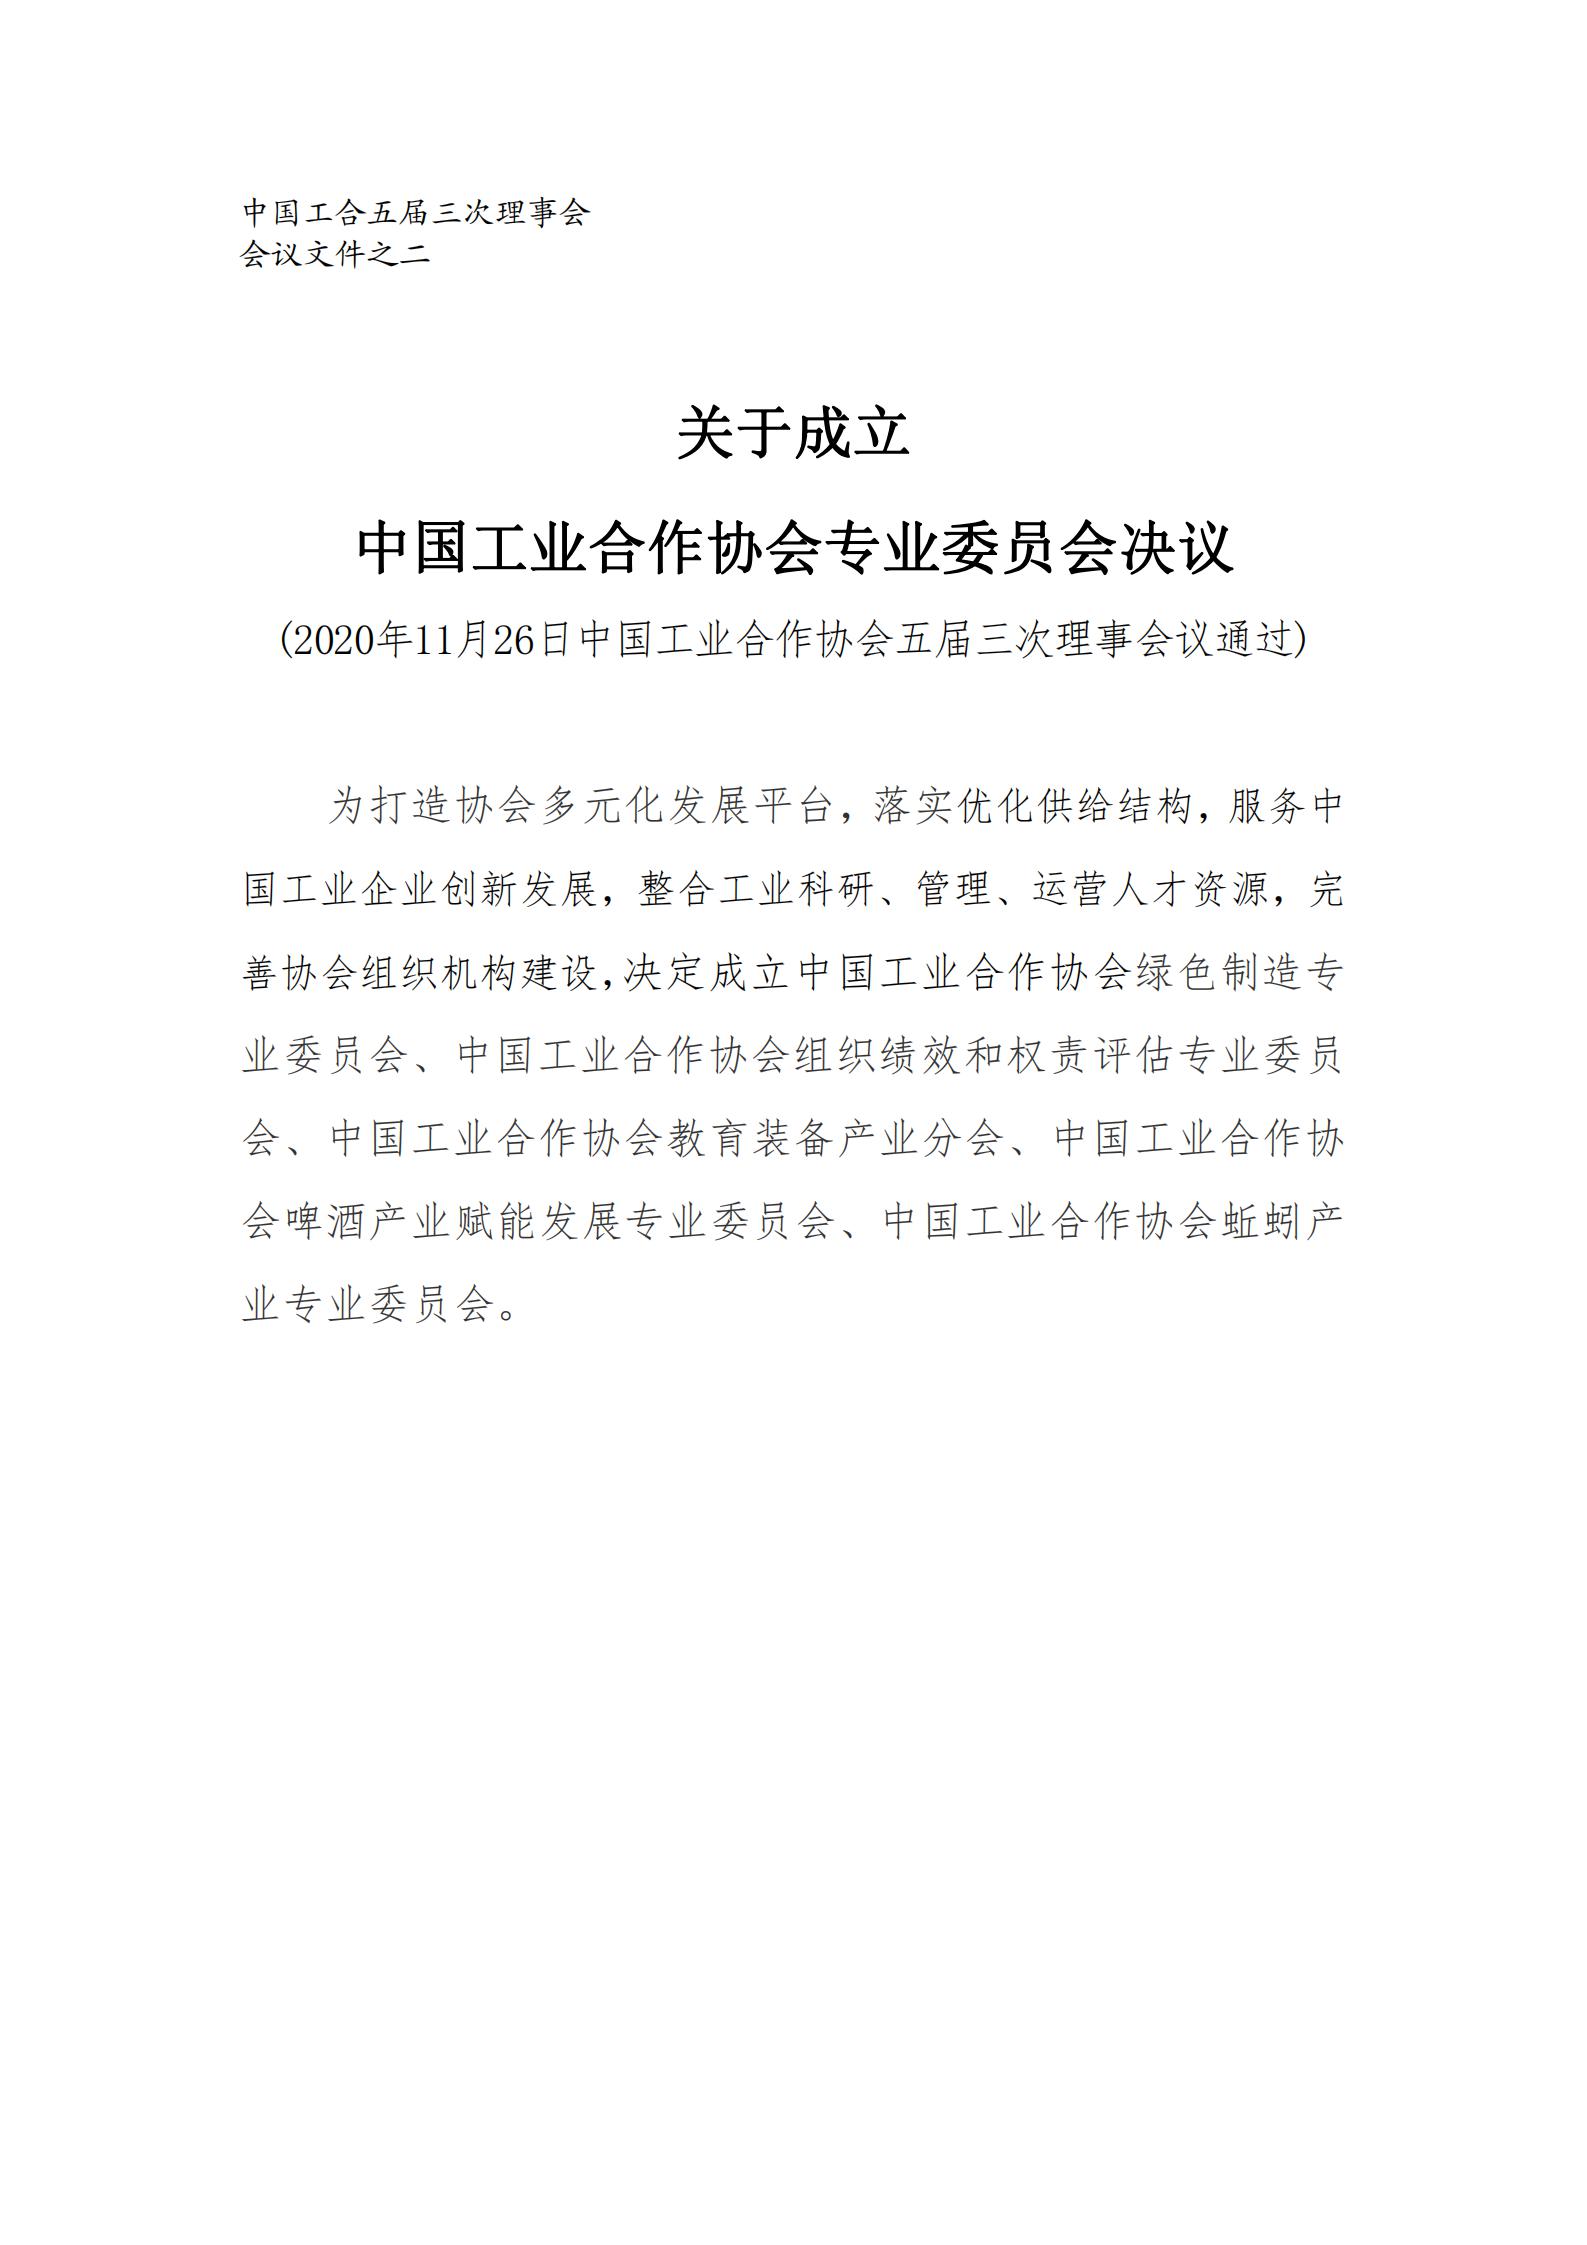 之2关于成立中国工业合作协会专业委员会的决议1101_00.jpg